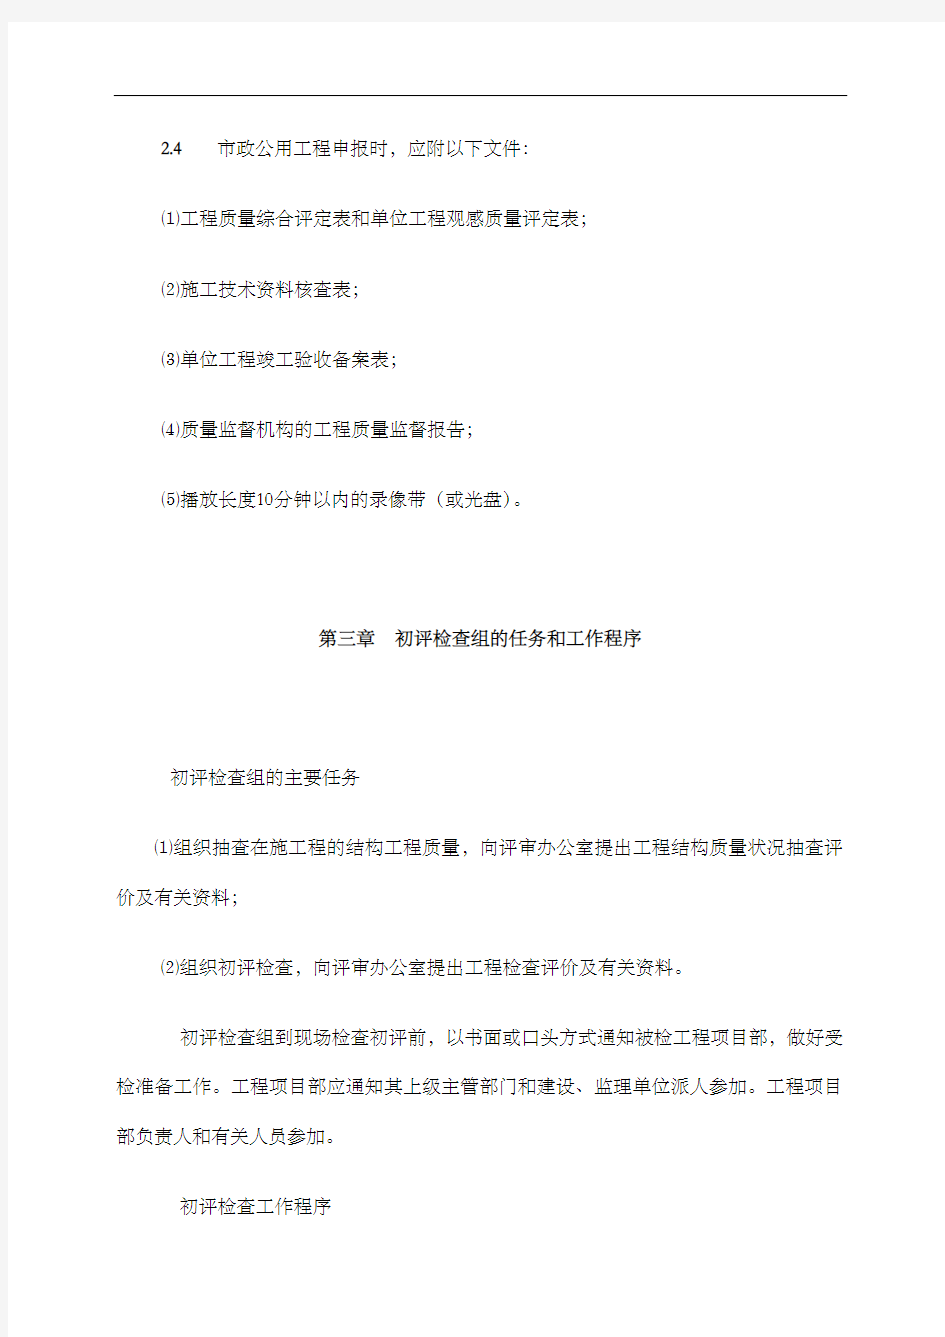 北京市市政公用工程长城杯工程初评检查实施细则试行